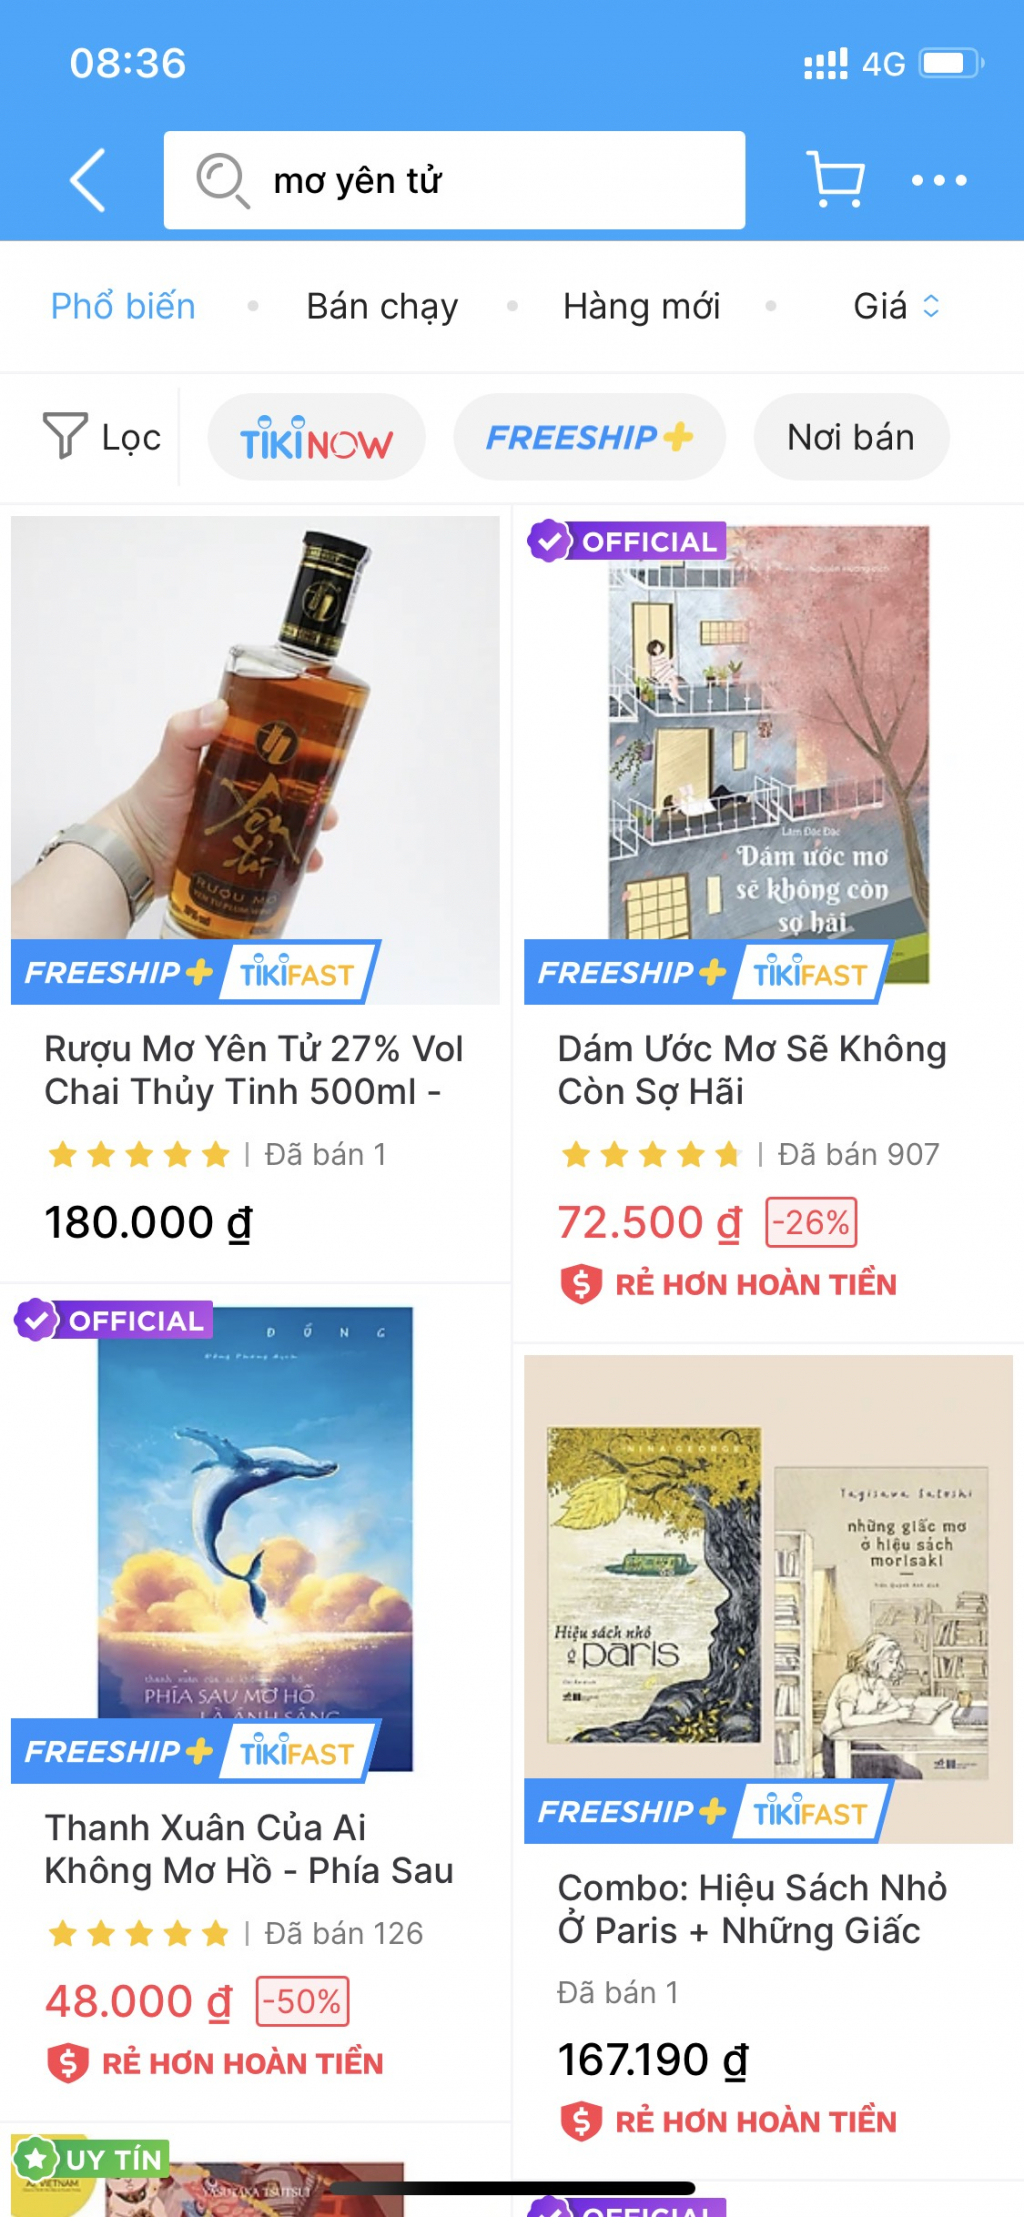 Nhiều doanh nghiệp Quảng Ninh tận dụng không gian mạng xã hội để bán hàng.